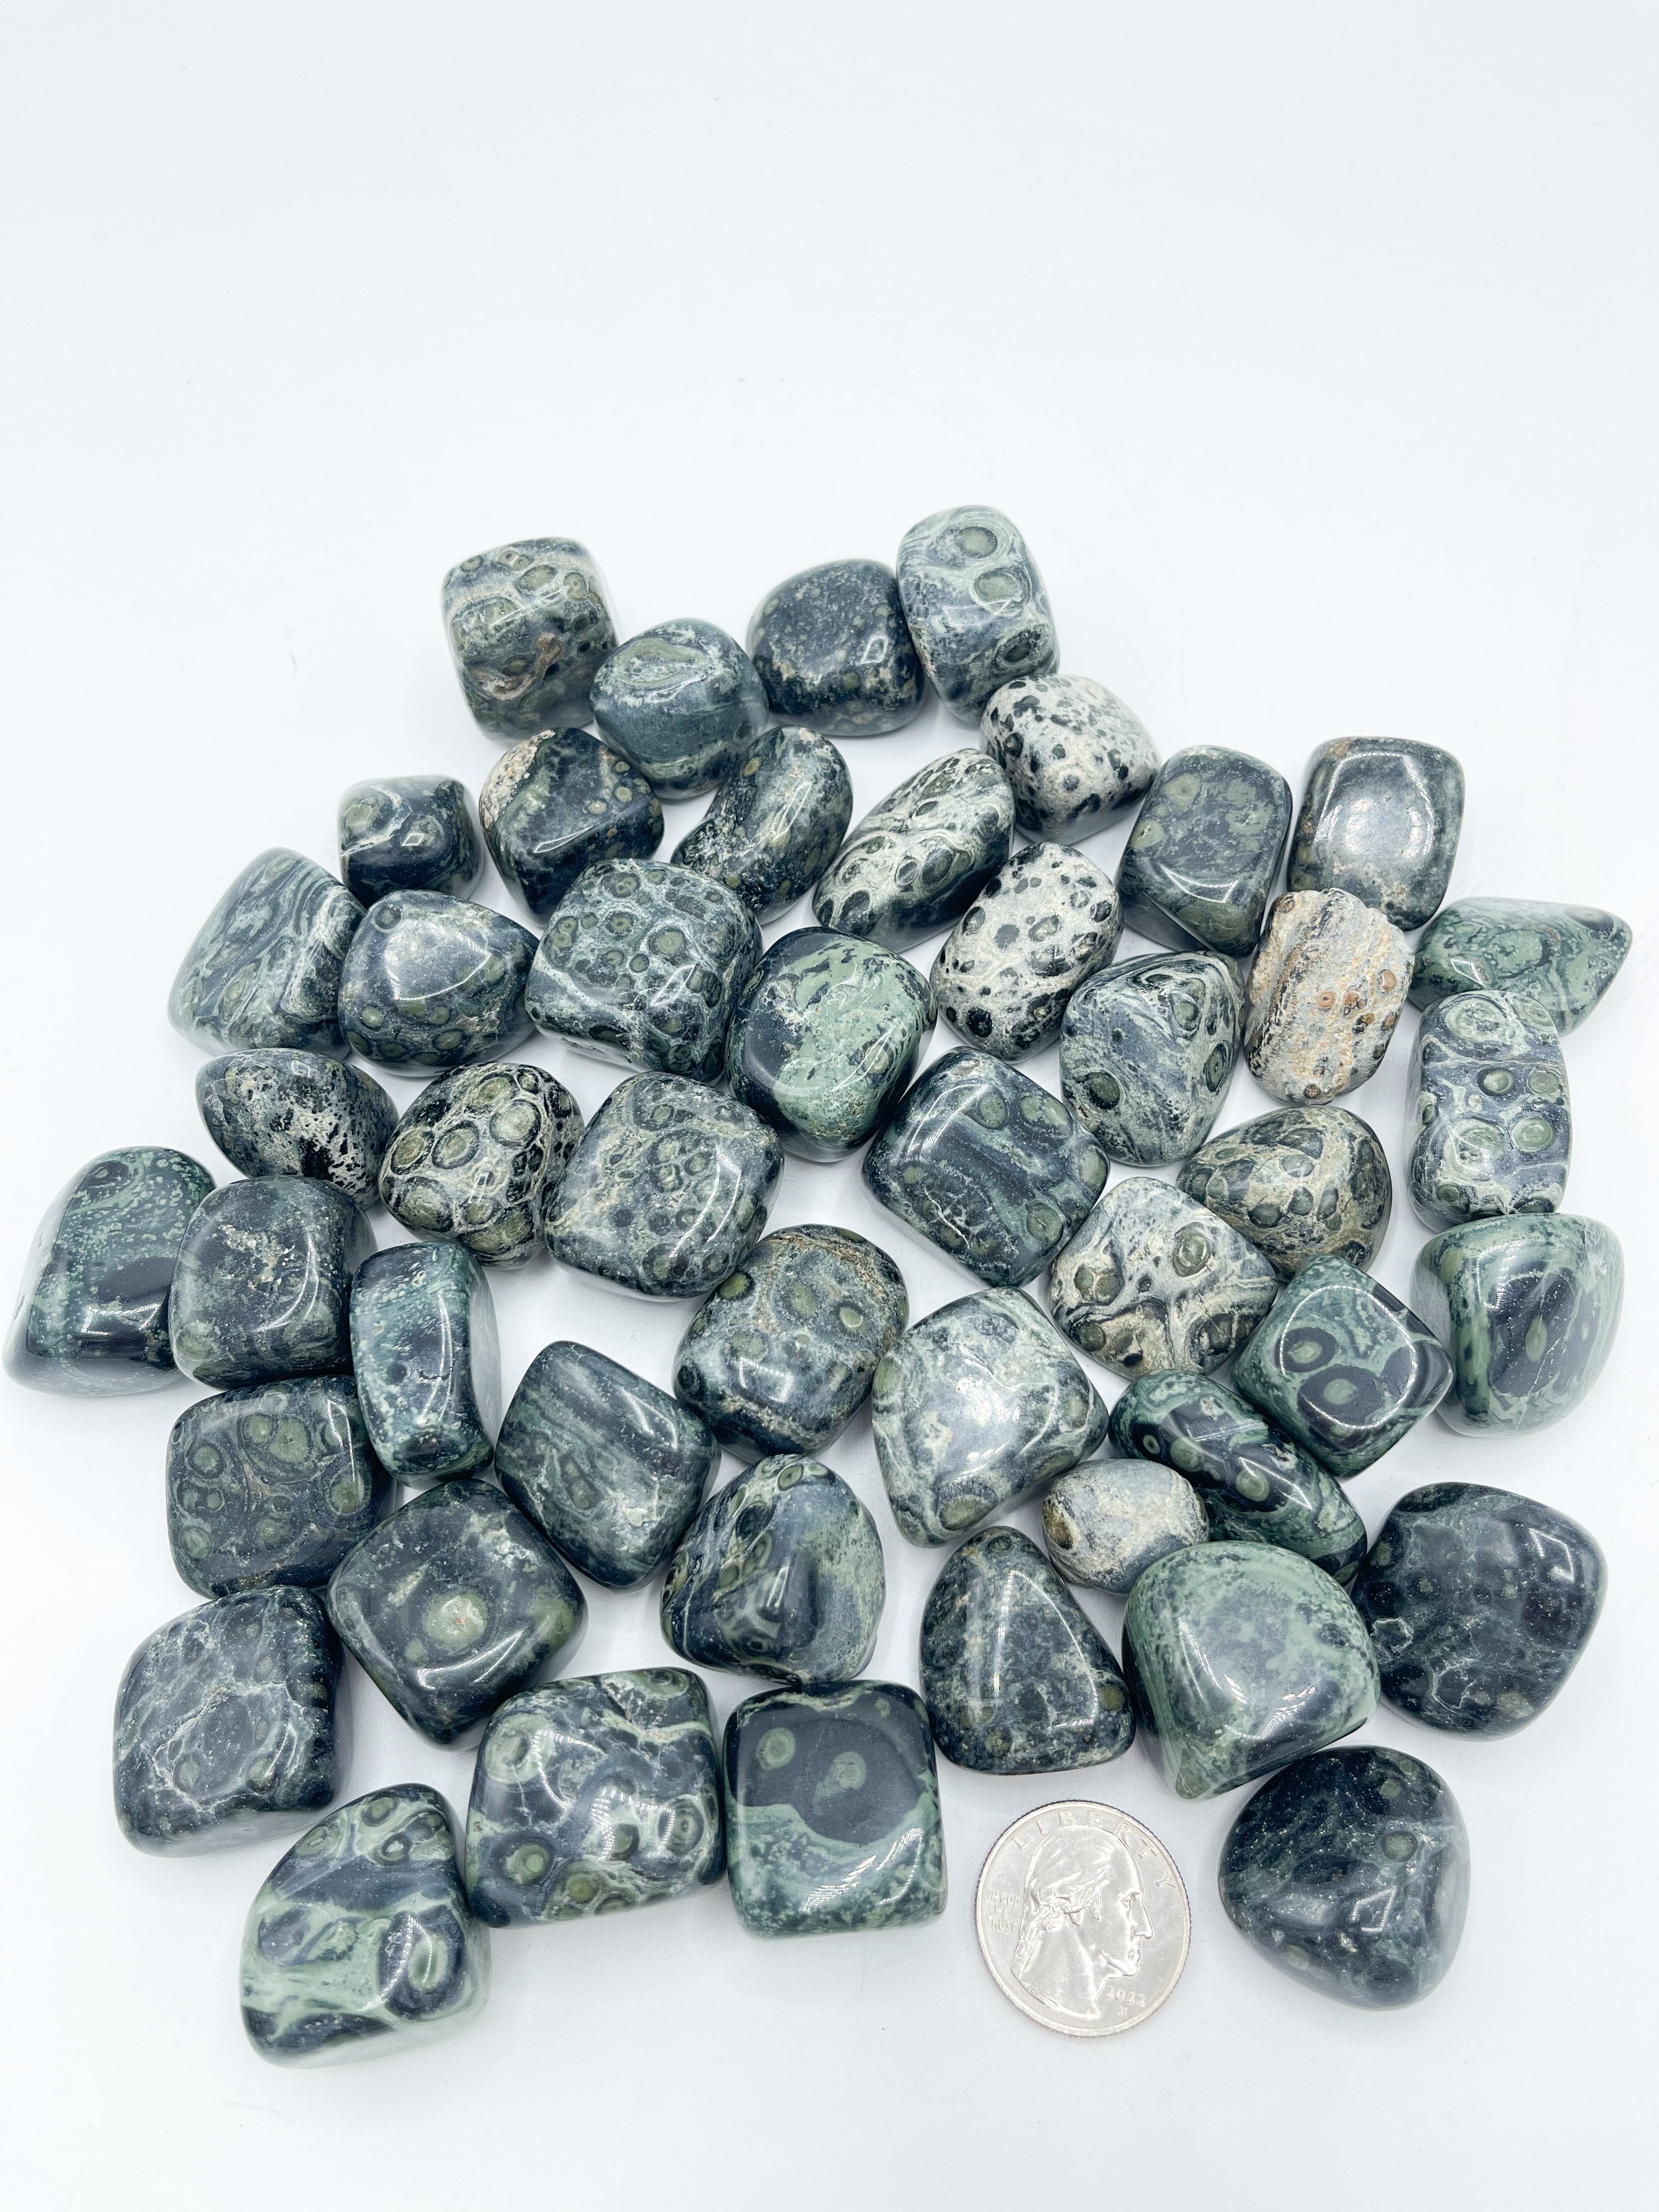 Wholesale Kambaba Jasper Tumble stone -1kg bulk lot